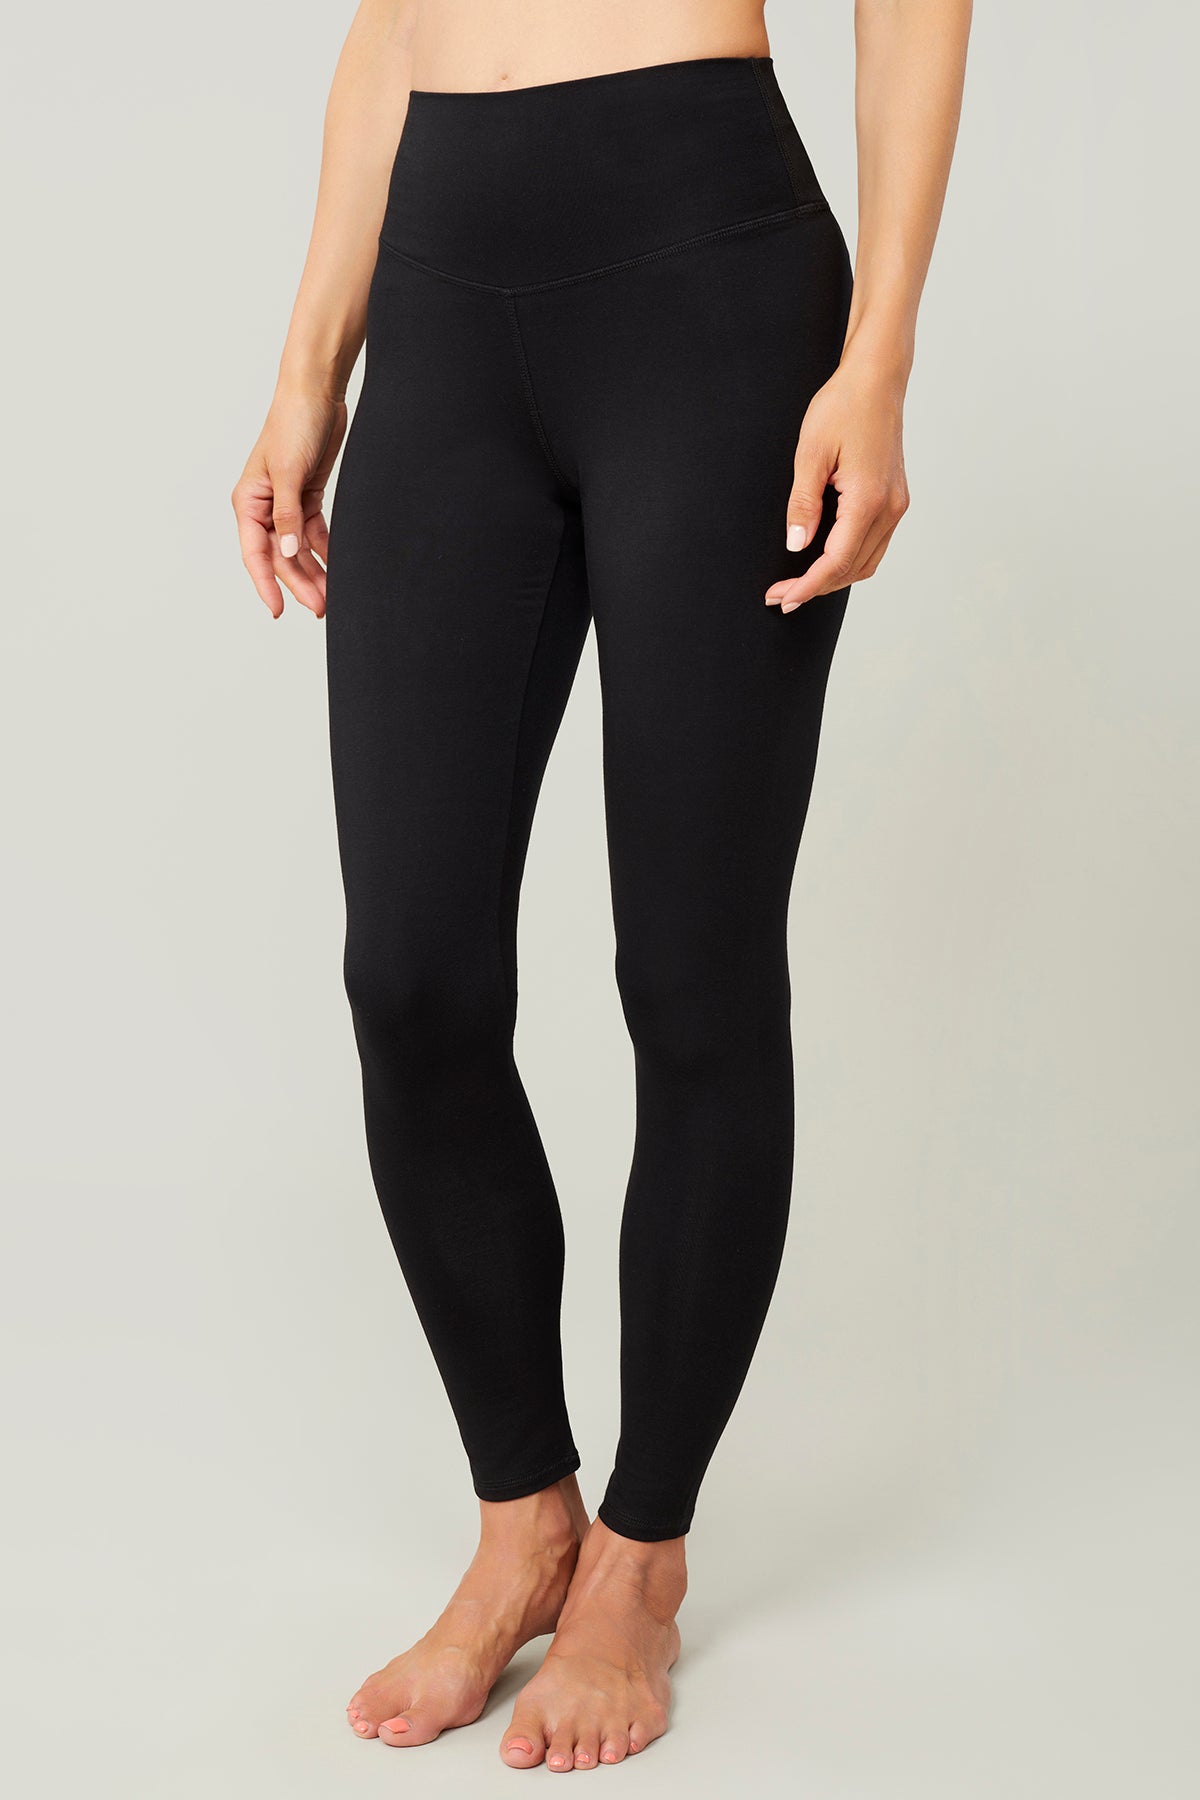 Dark Grey Color Yoga Leggings with Allover Mandala Design Printed Yoga –  Trendygals